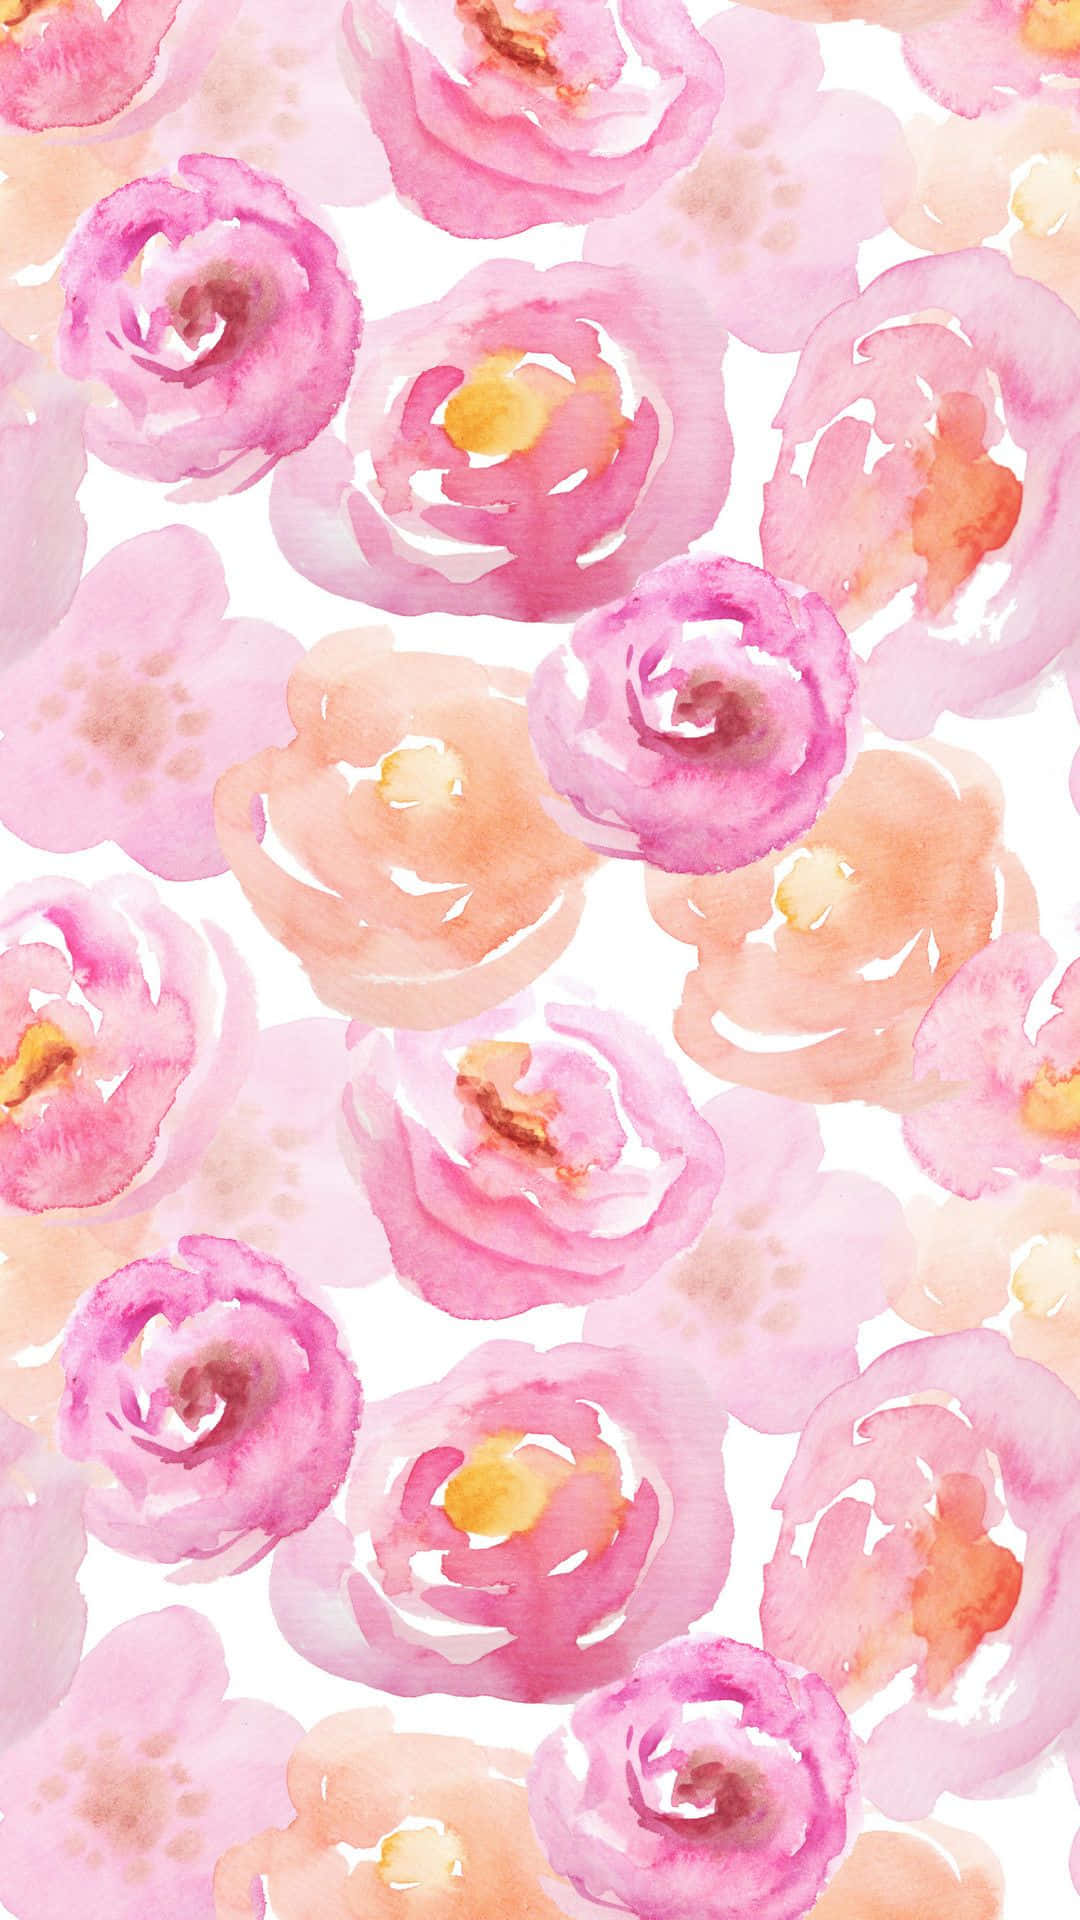 Feiernsie Einen Blühenden Frühling Mit Diesem Atemberaubenden Rosa Blumenmuster. Wallpaper